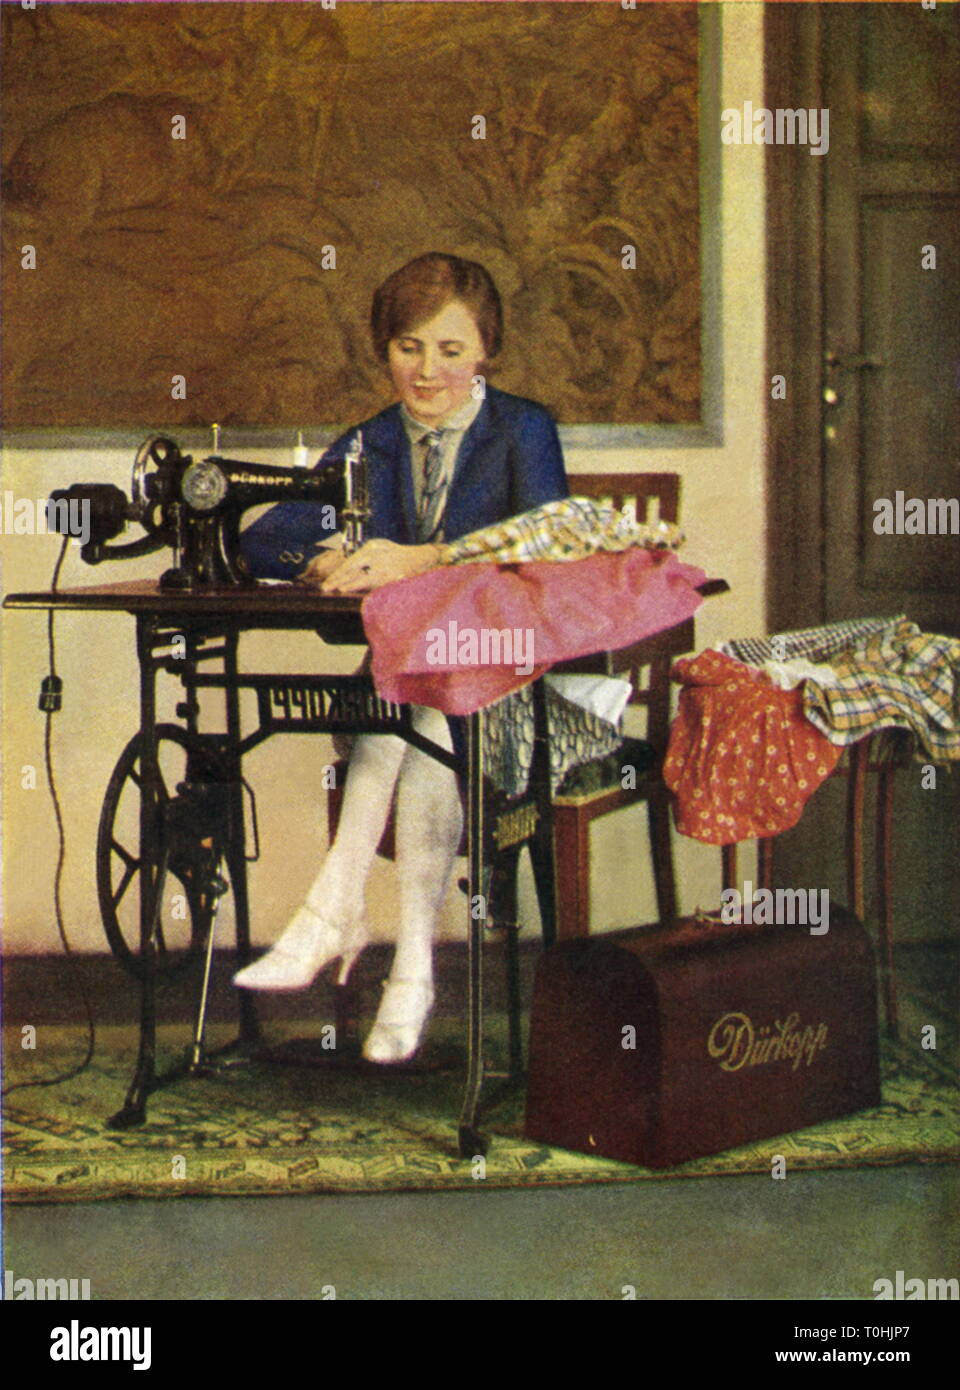 Domestico, la cucitura, la donna con la macchina da cucire, marchio Duerkopp, abito self cucitura, attrice e film di star Ossi Oswalda, Germania, circa 1929, Additional-Rights-Clearance-Info-Not-Available Foto Stock